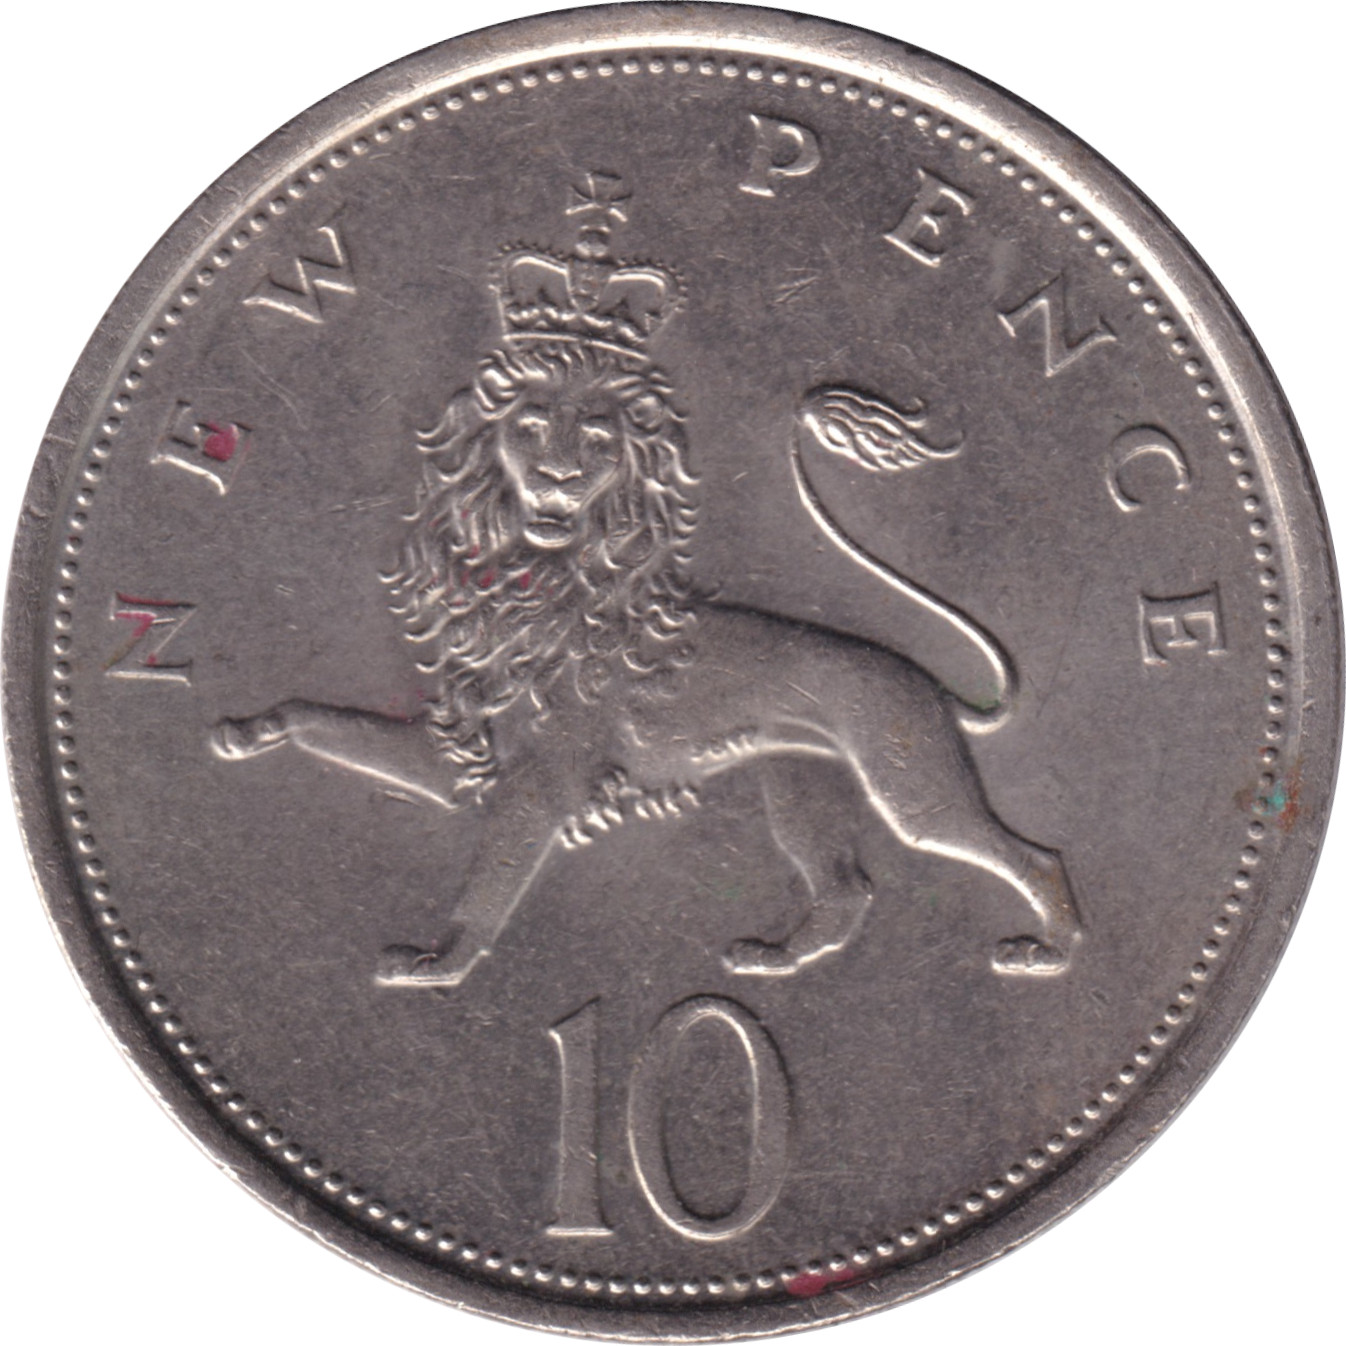 10 pence - Elizabeth II - Young bust